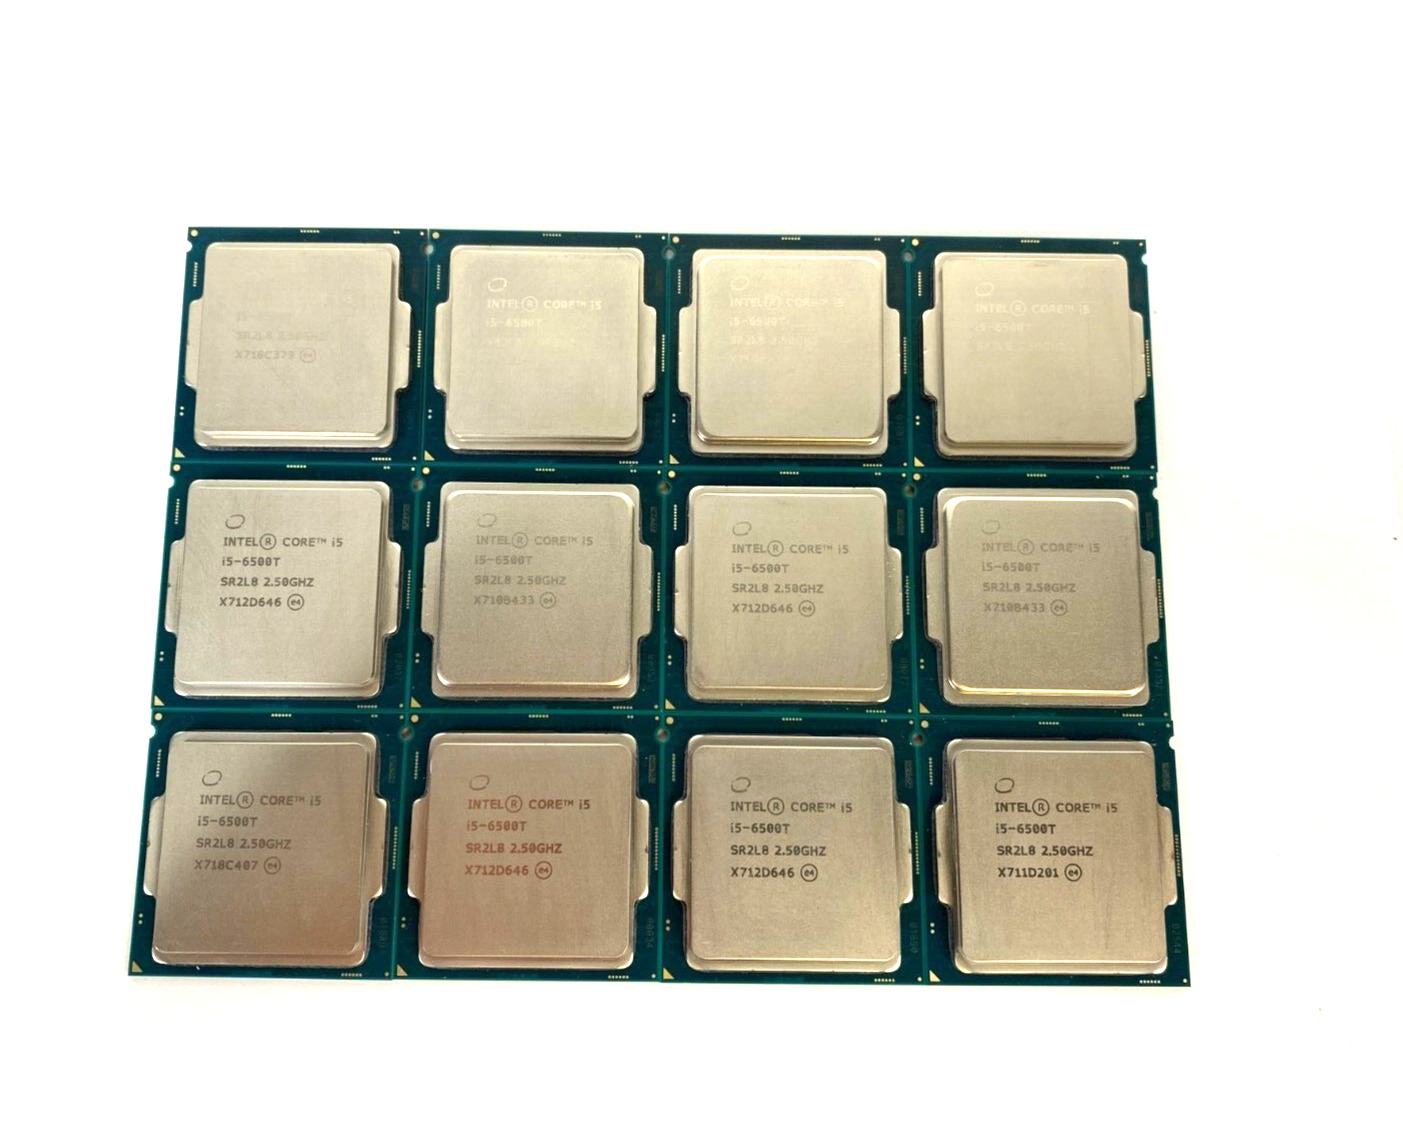 (Lot of 12) Intel Core i5-6500T SR2L8 2.50GHz 6 MB Cache Desktop CPU Processors